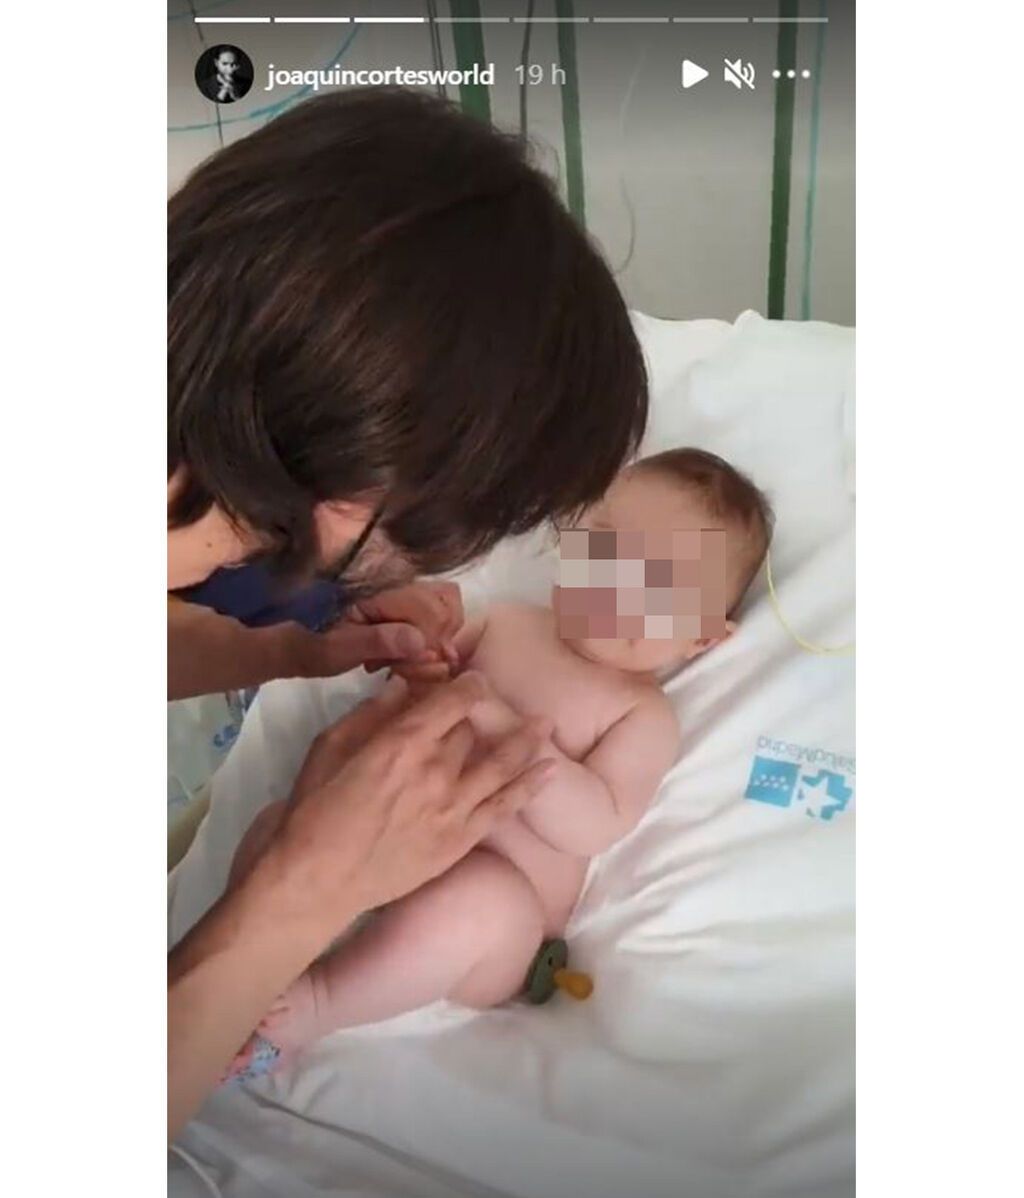 Andrea, el hijo de Joaquín Cortés, ingresado en el hospital por el virus VRS